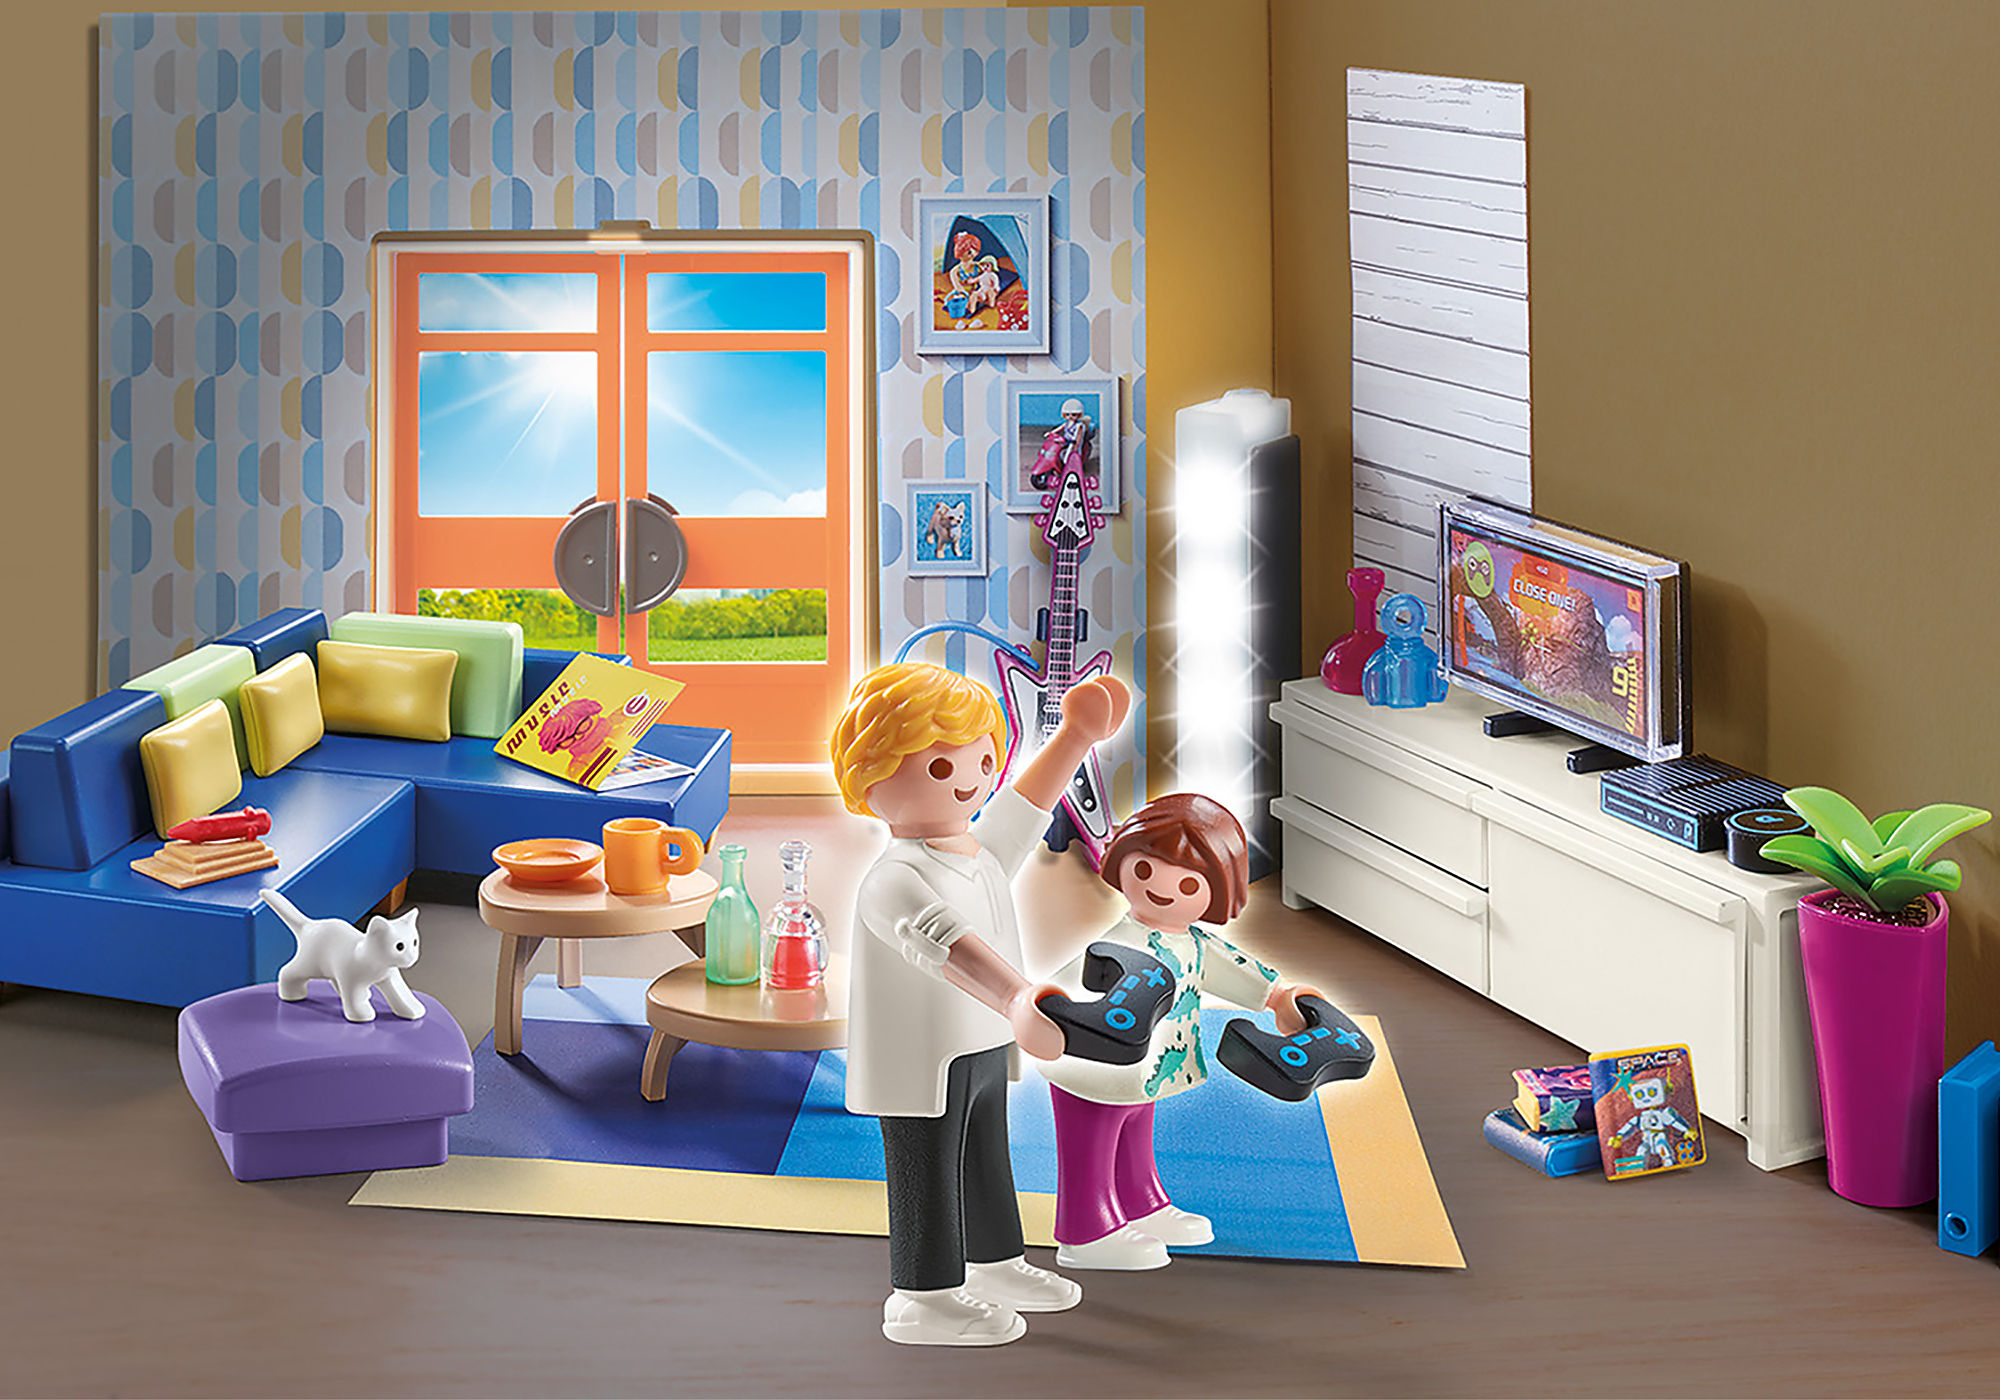 Playmobil : City Life - Etage supplémentaire aménagé pour Maison